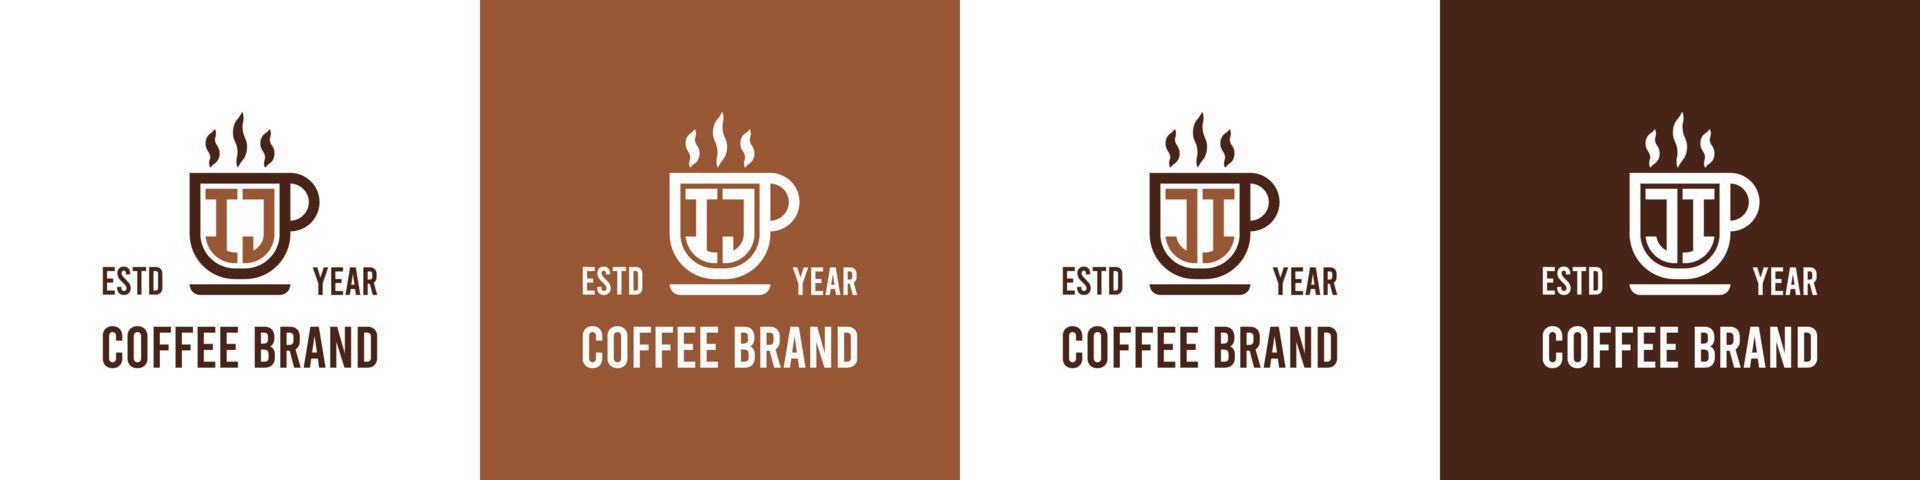 lettera ij e ji caffè logo, adatto per qualunque attività commerciale relazionato per caffè, Tè, o altro con ij o ji iniziali. vettore